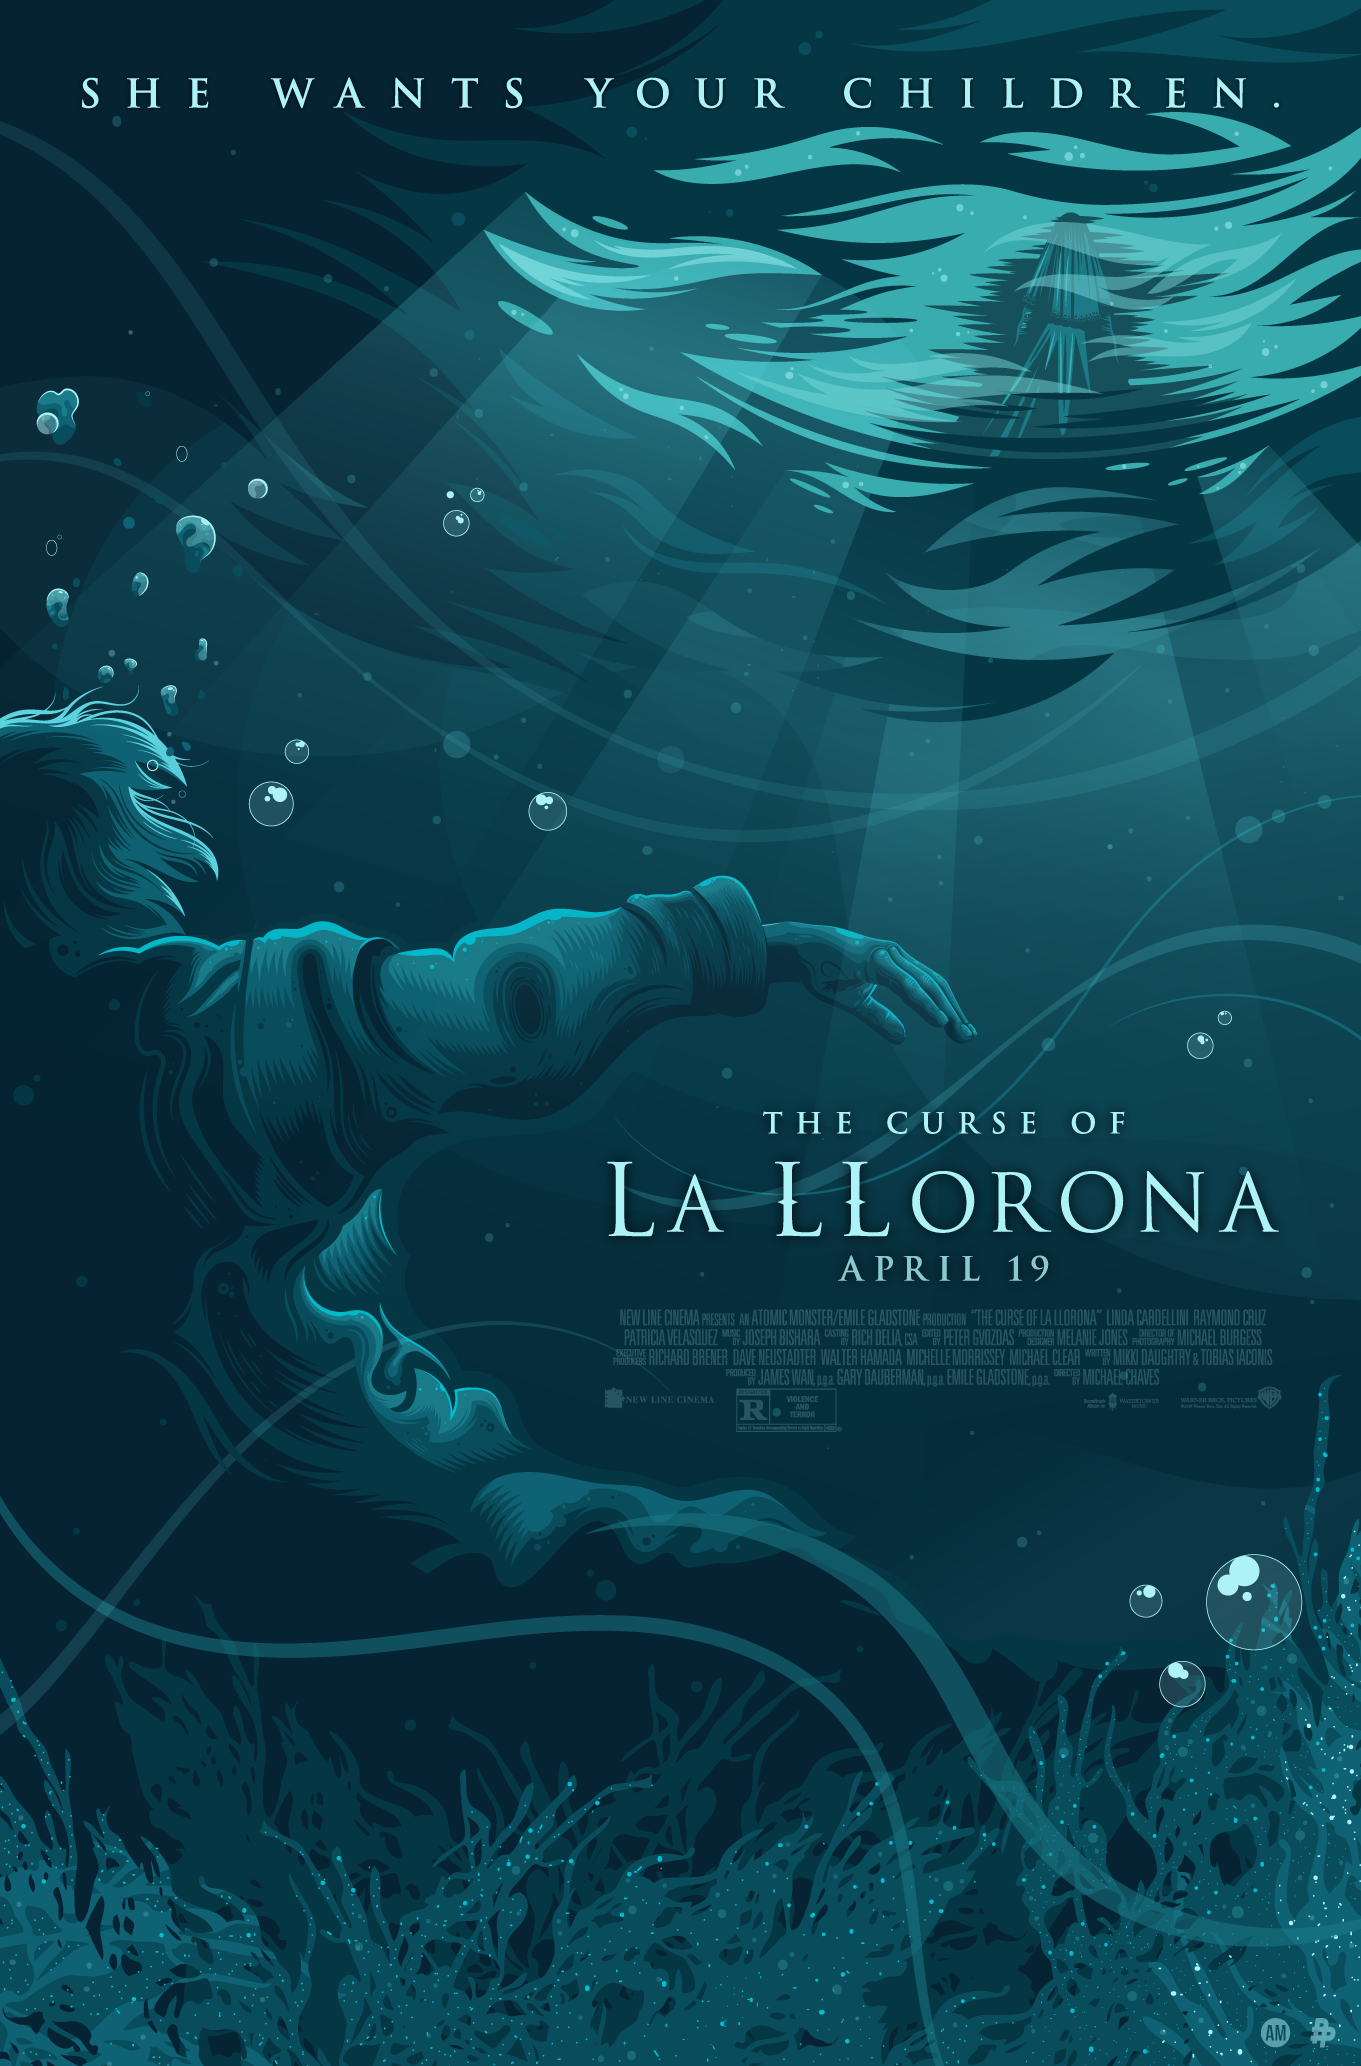 Official Warner Bros - La Illrona